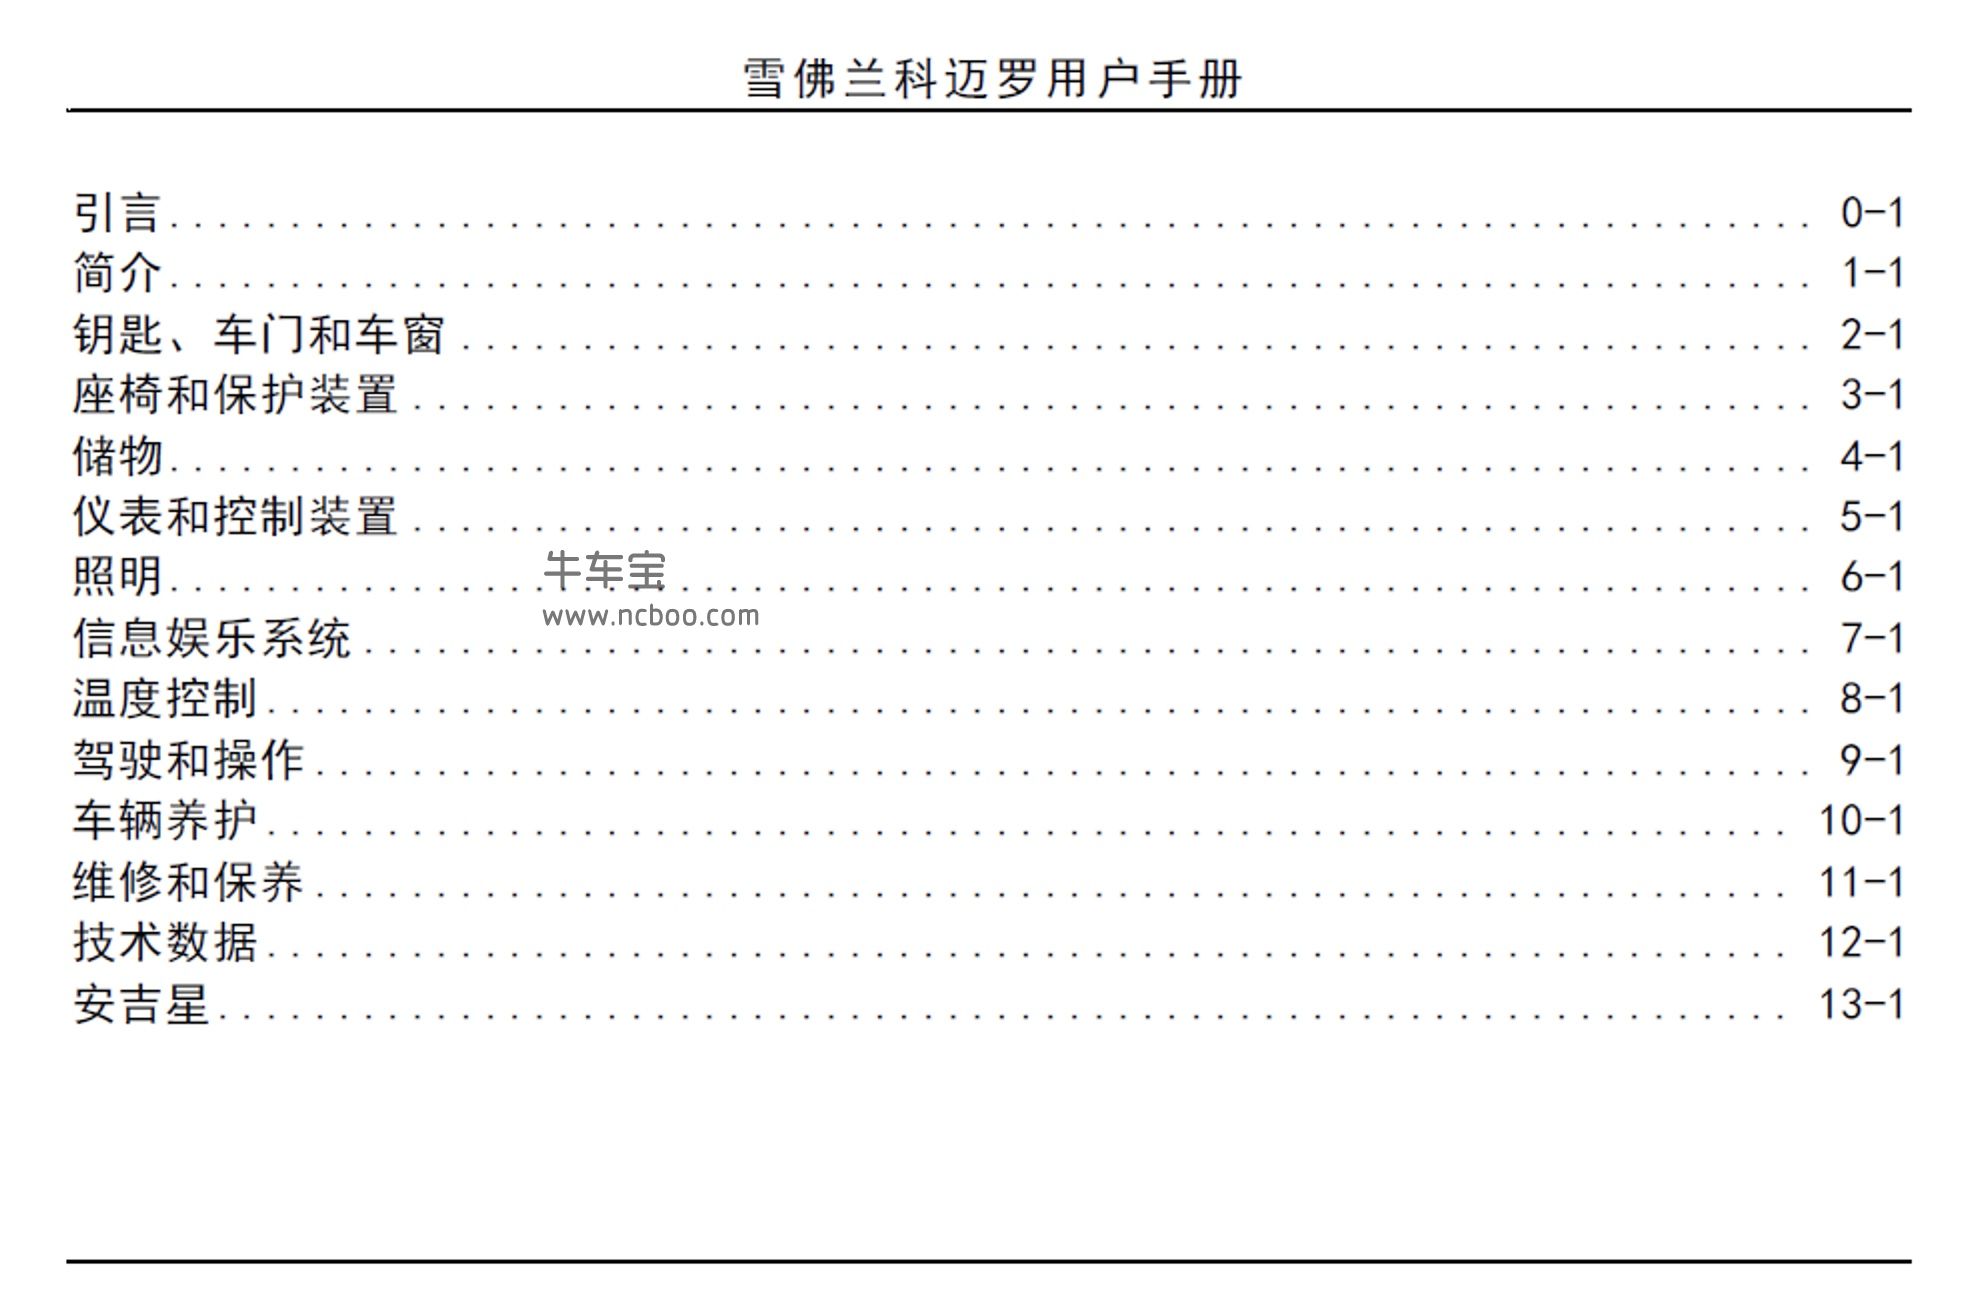 2015款雪佛兰科迈罗RS限量版用户手册产品使用说明书PDF下载